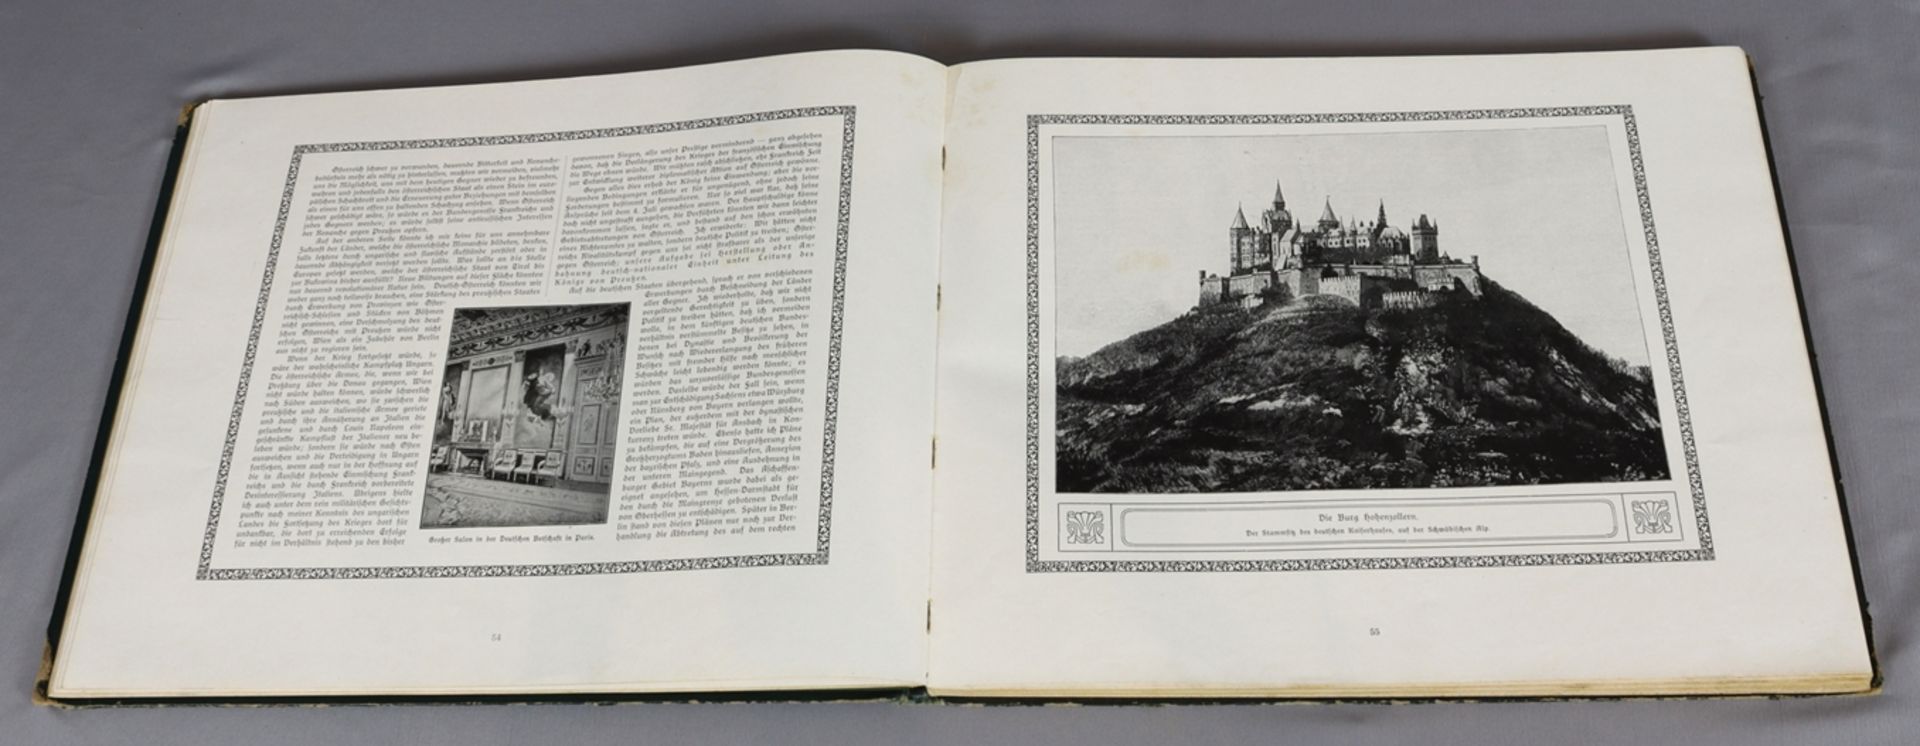 Collector's albums, Bismarck 1815 - 1915 u. Nachkriegszeiten 1918 - 1934 - Image 4 of 7